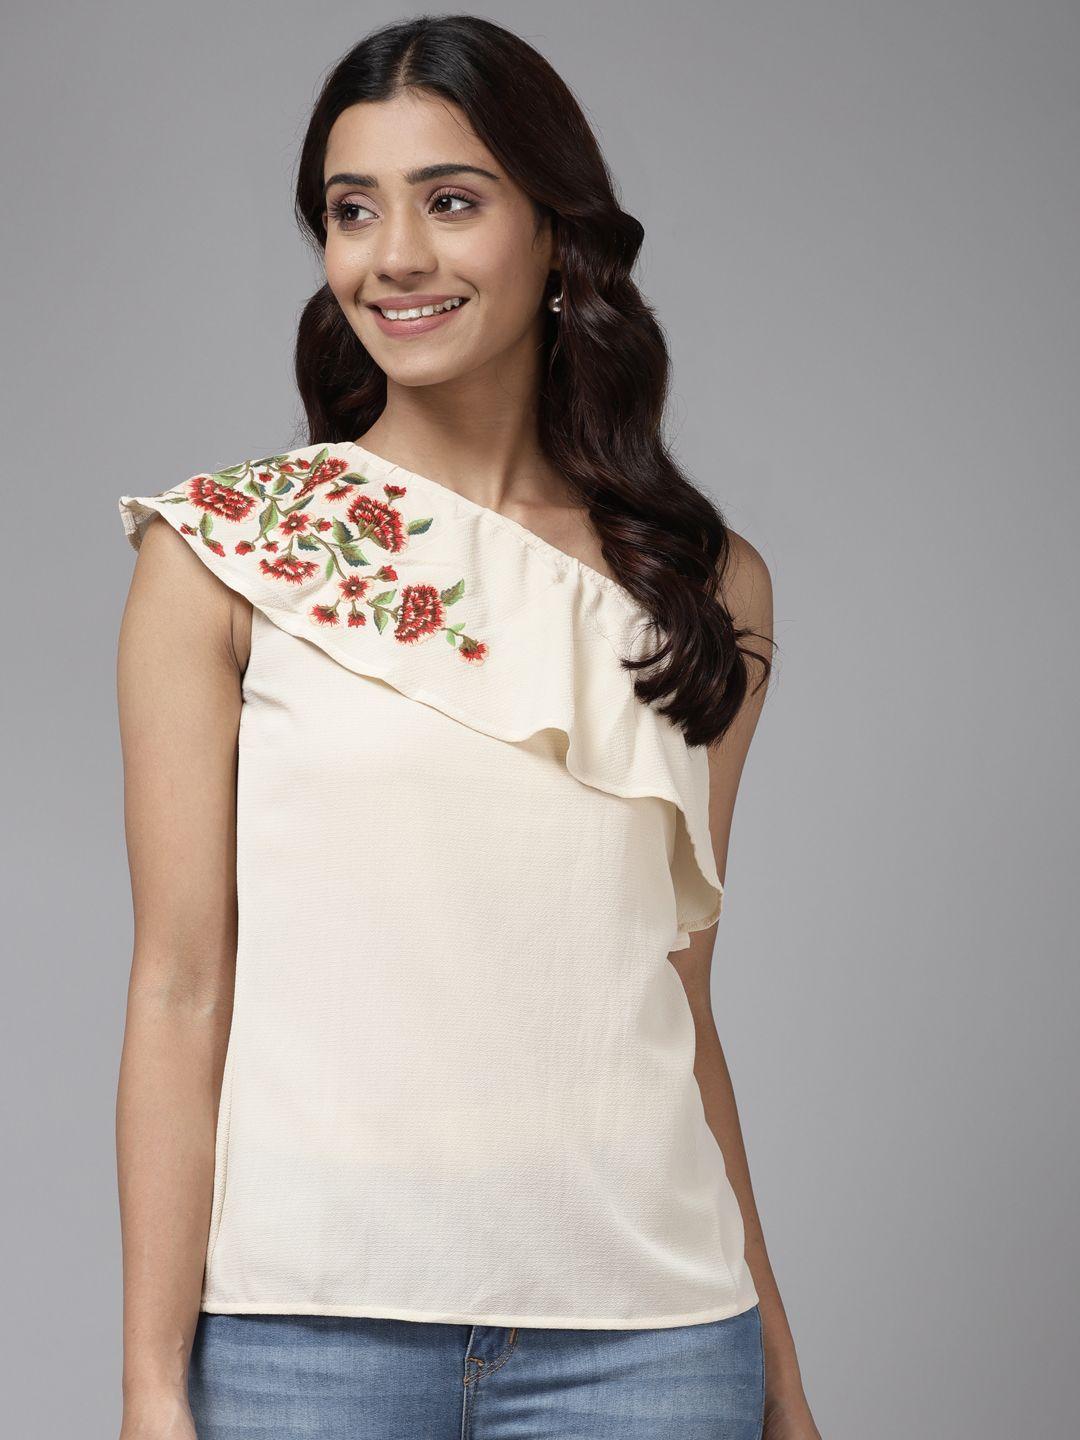 aarika-beige-floral-print-one-shoulder-ruffles-georgette-top